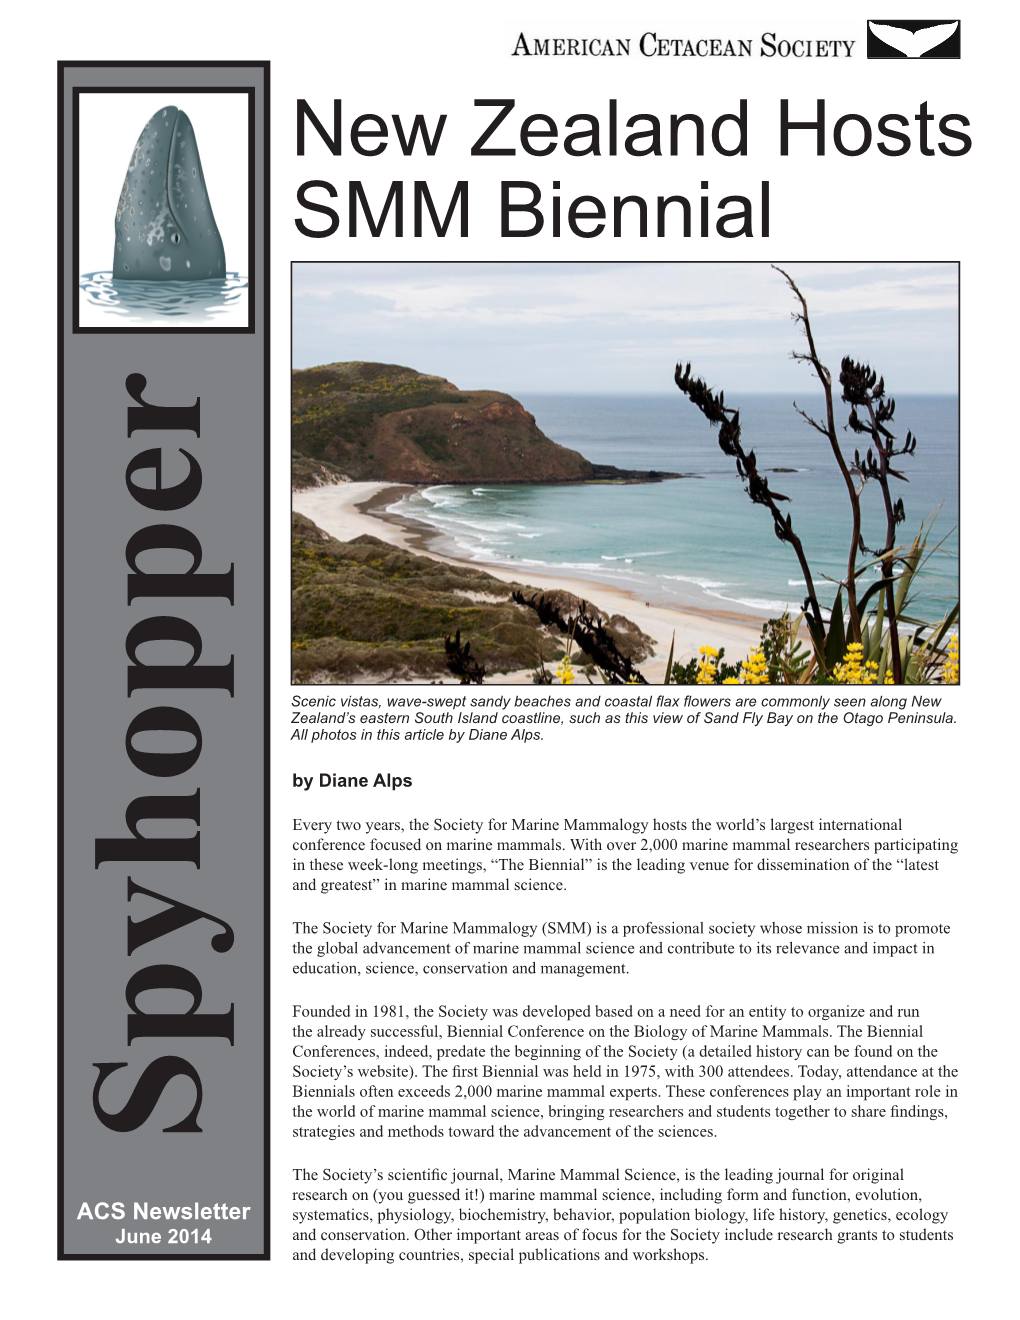 New Zealand Hosts SMM Biennial